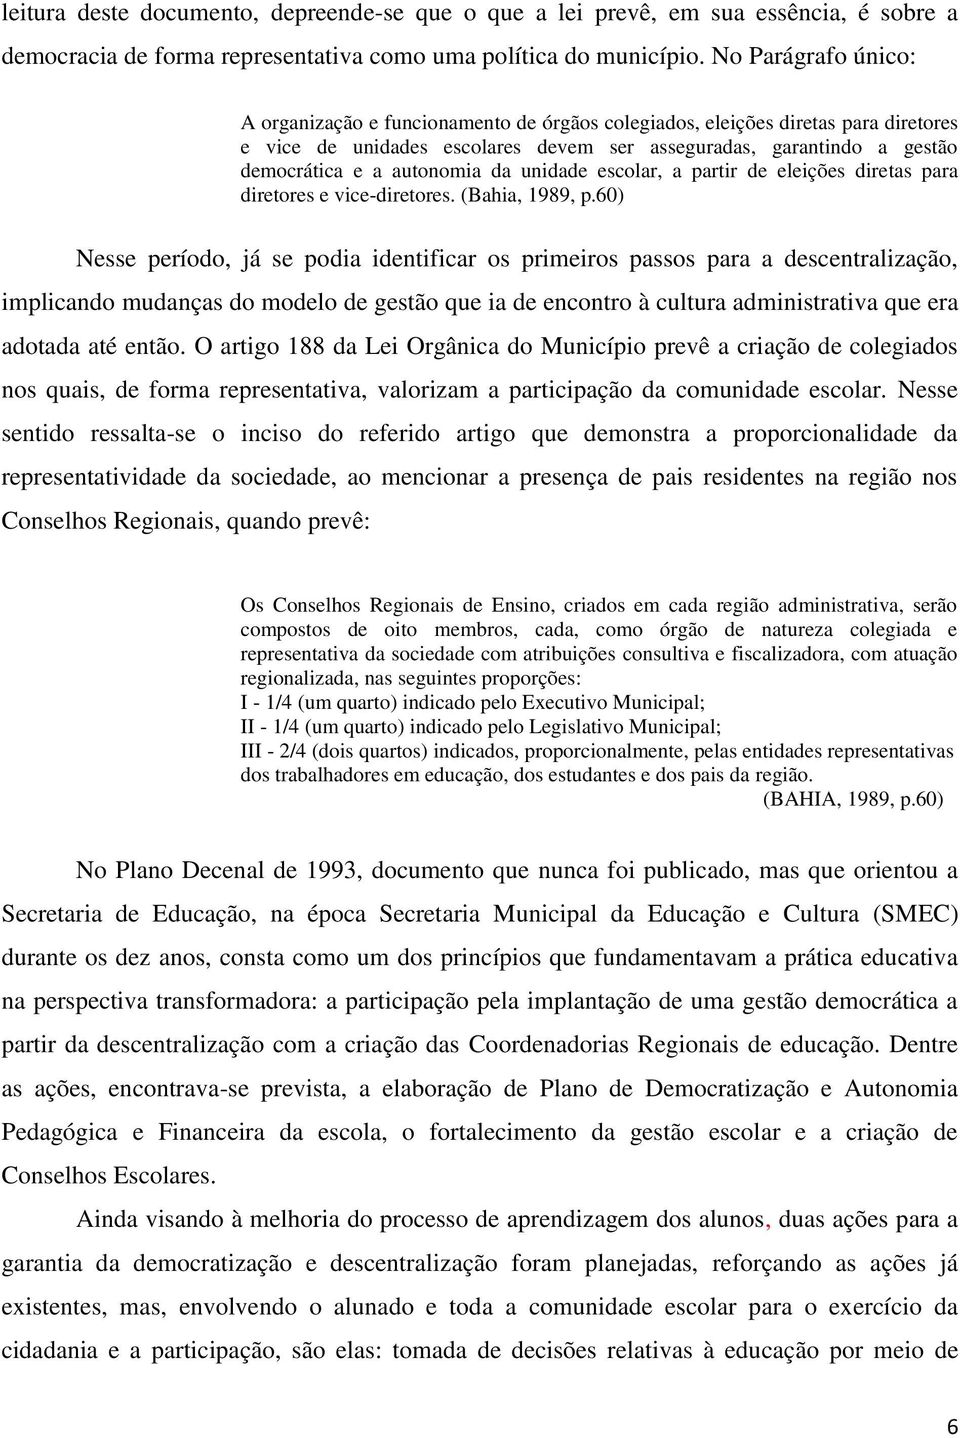 autonomia da unidade escolar, a partir de eleições diretas para diretores e vice-diretores. (Bahia, 1989, p.